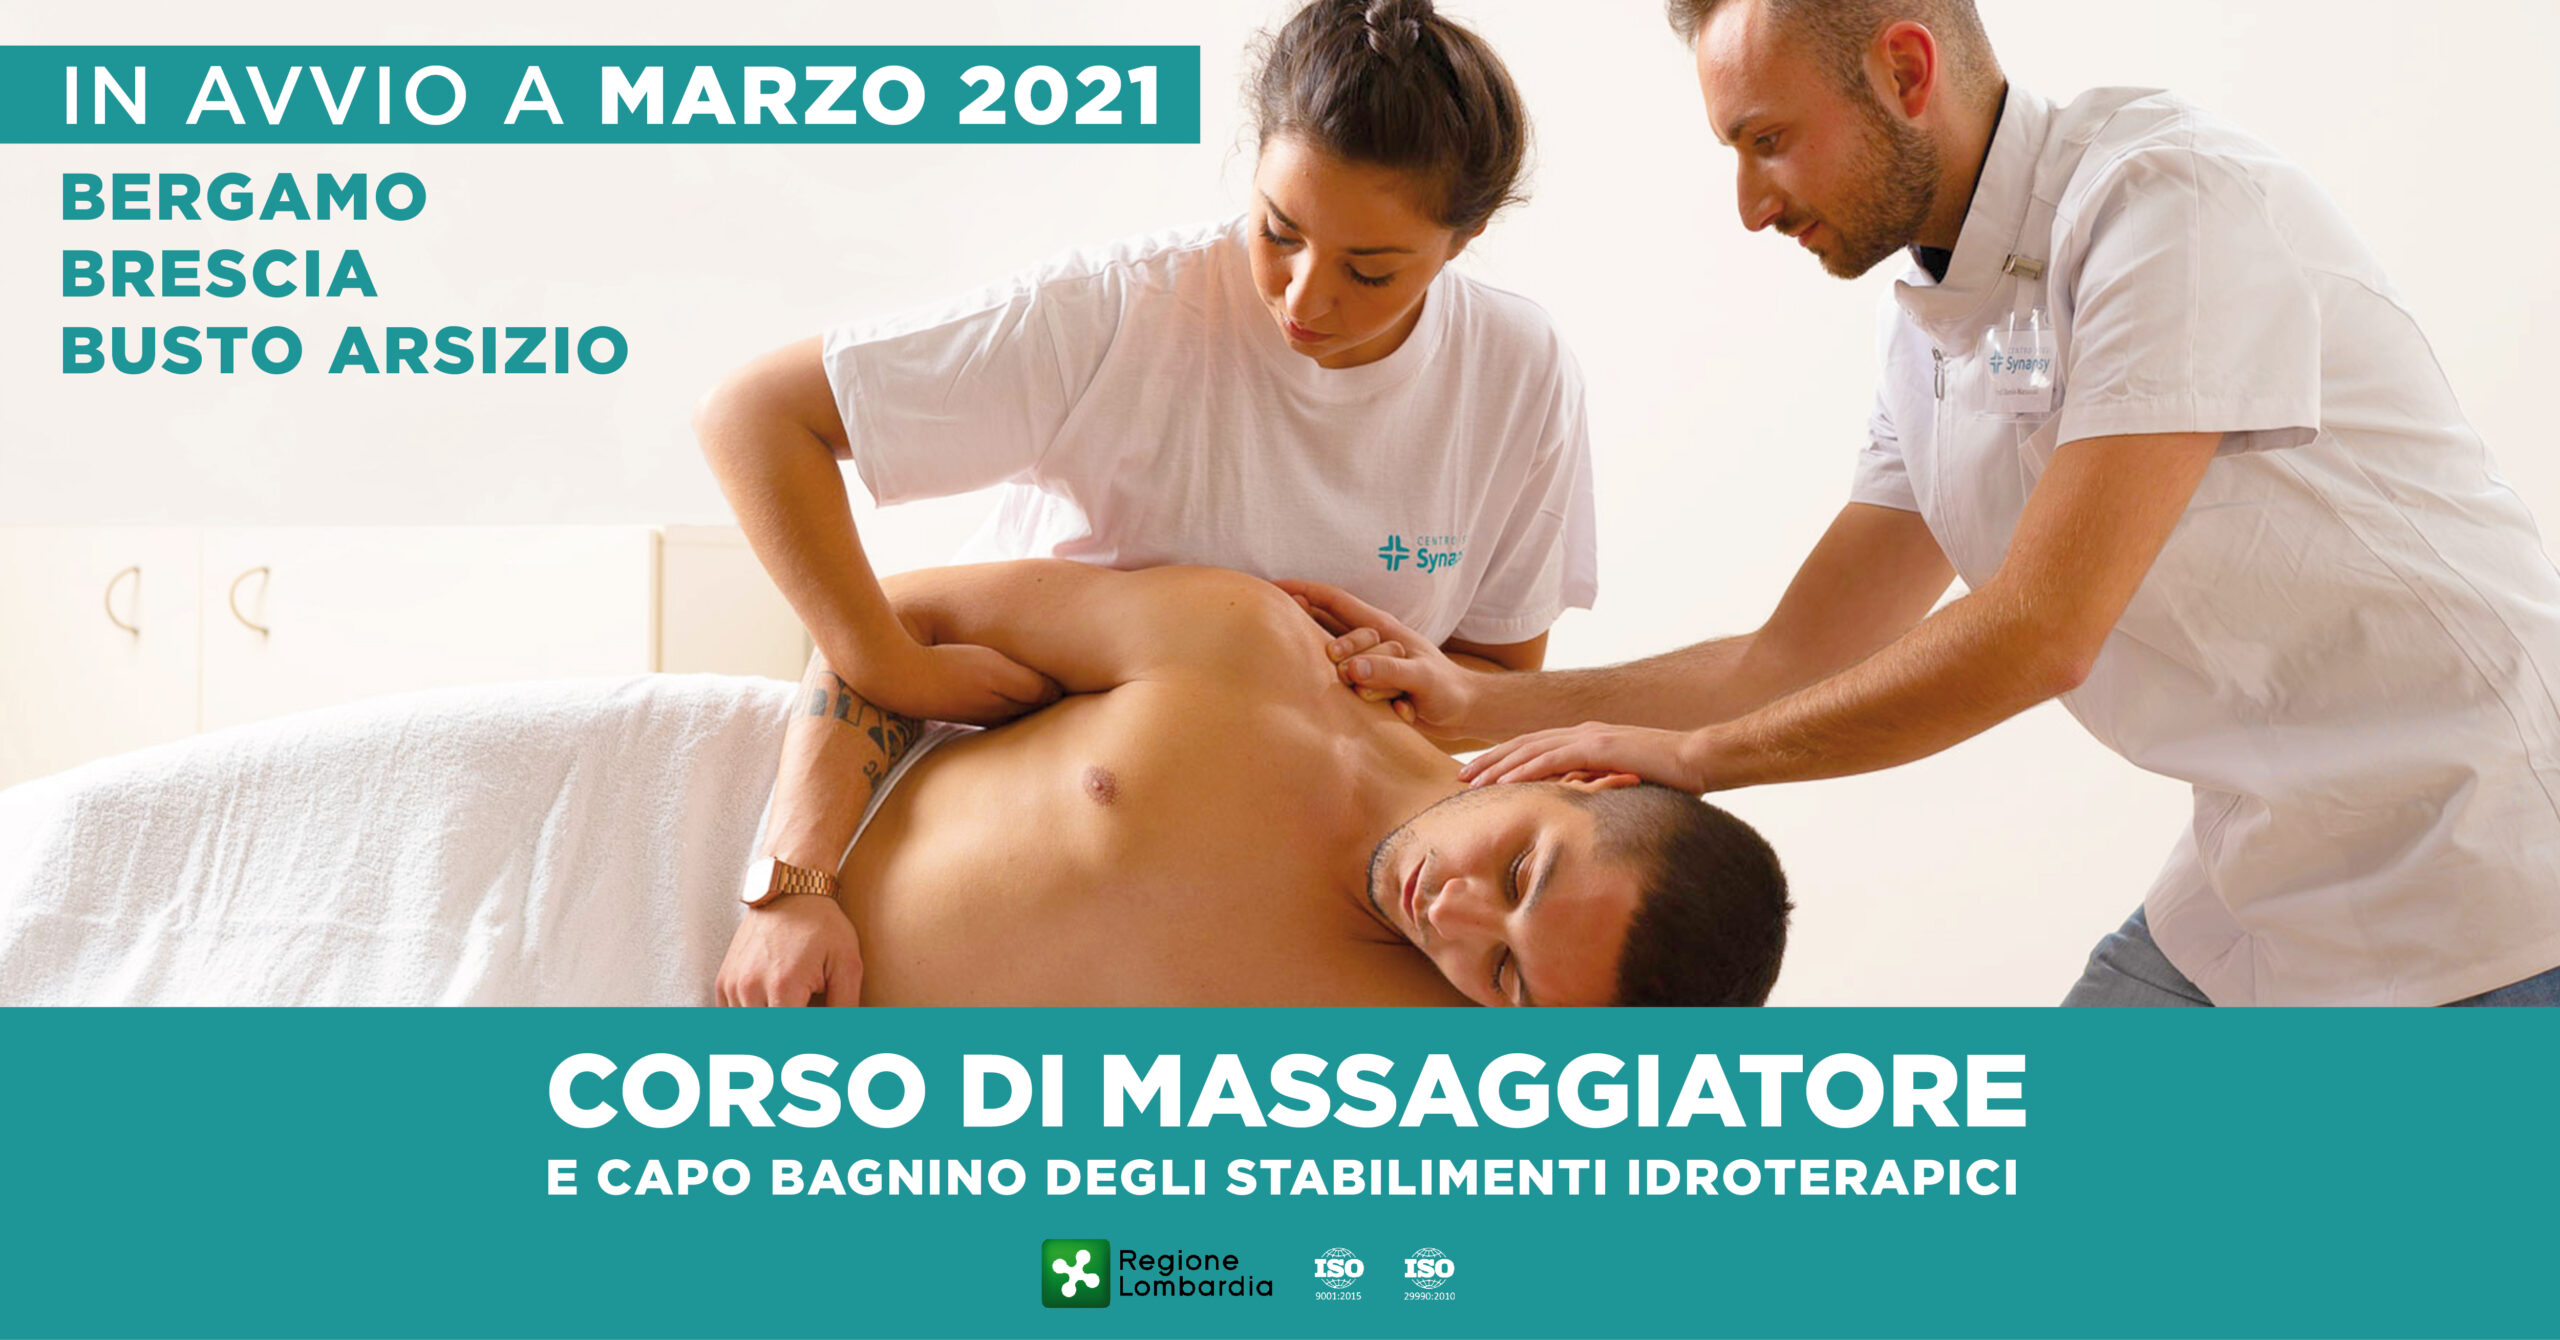 Marzo 2021: nuovi corsi MCB in avvio a Bergamo, Brescia e Busto Arsizio